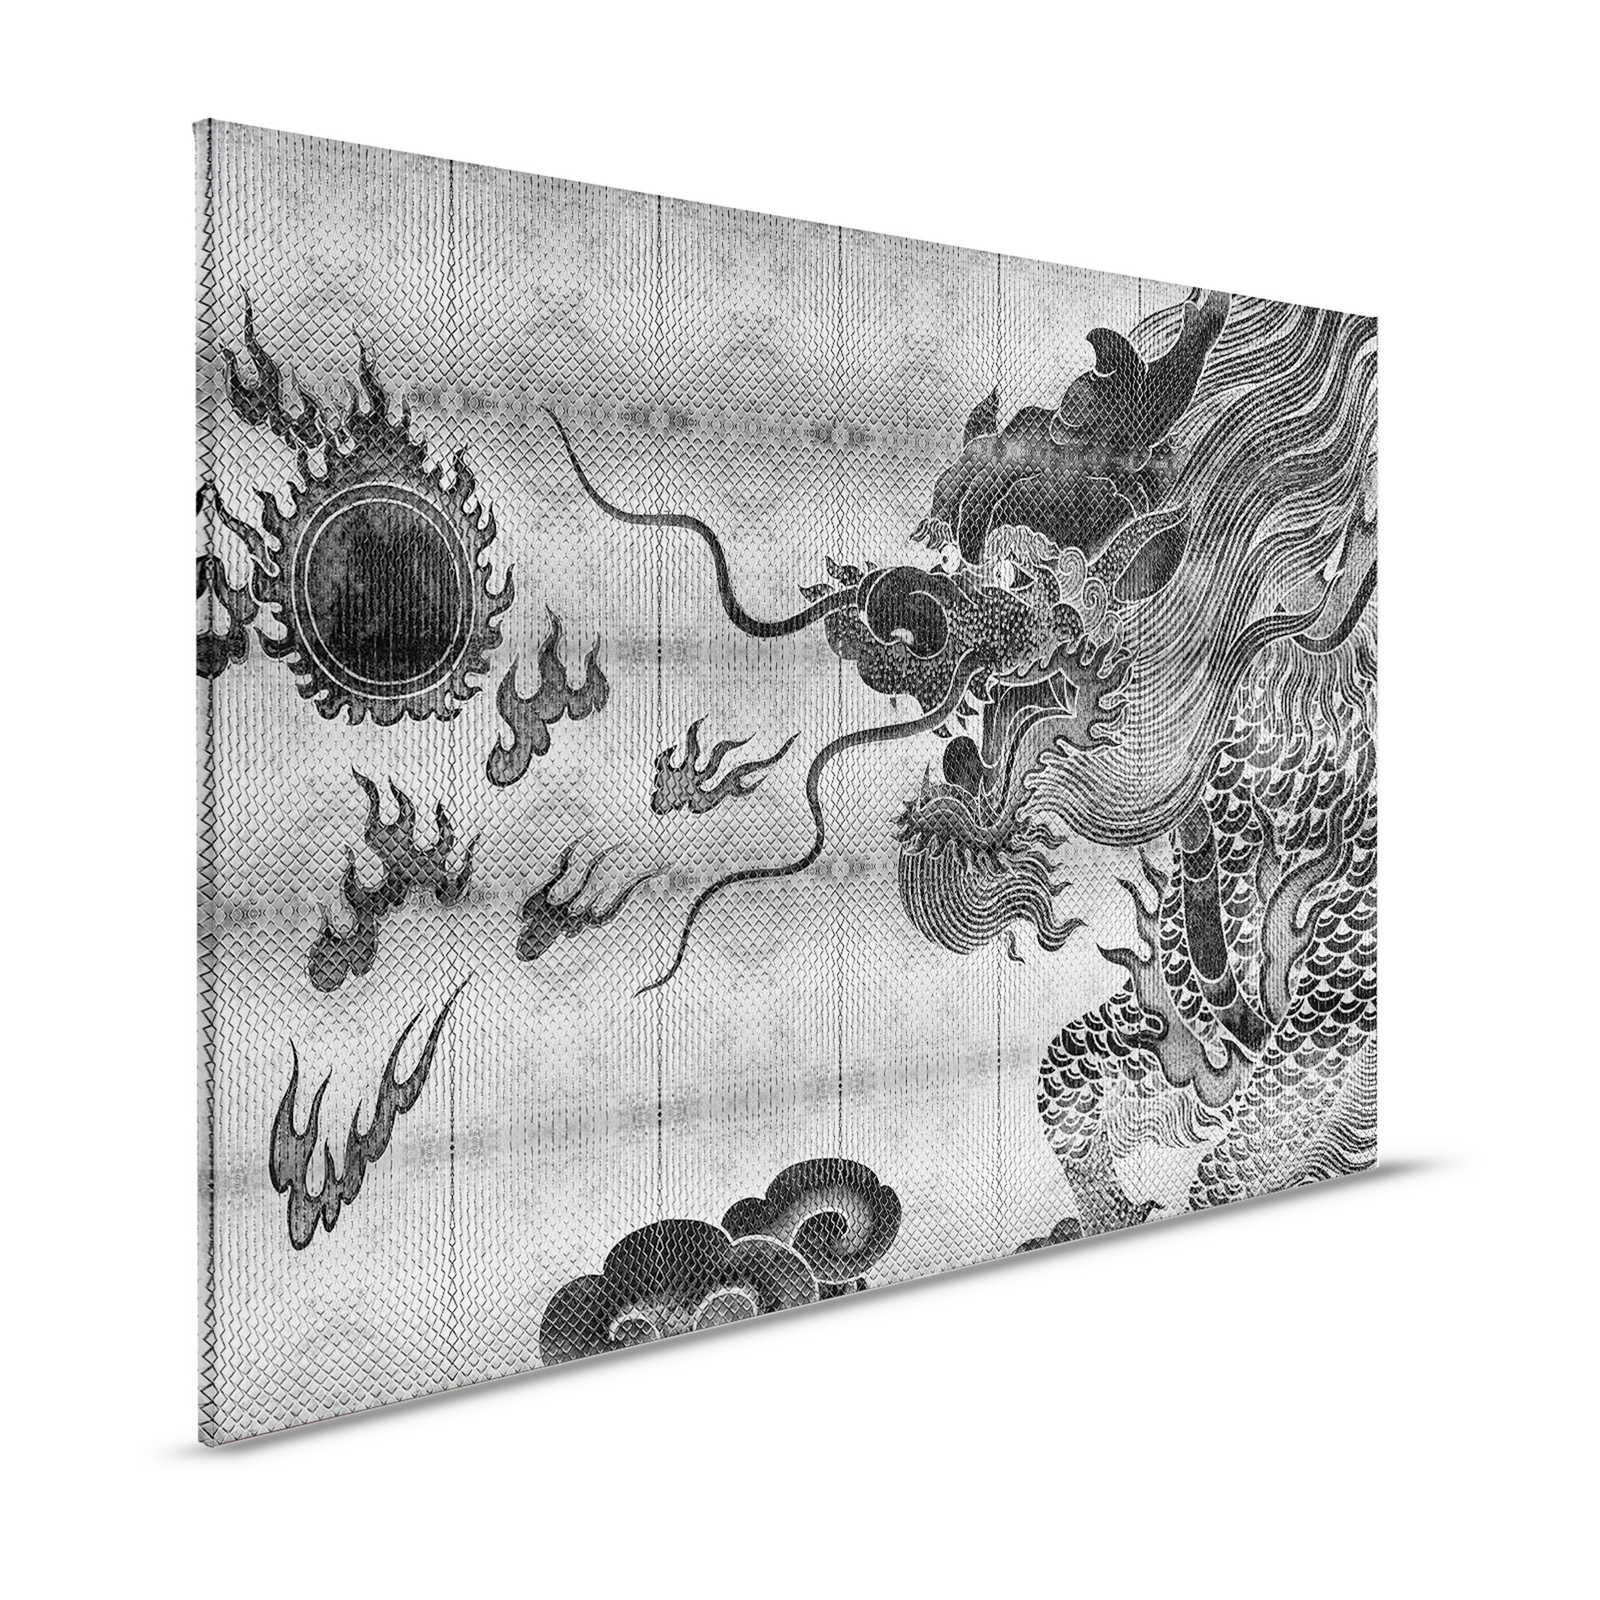 Shenzen 3 - Pittura su tela con drago in stile asiatico argento metallizzato - 1,20 m x 0,80 m
